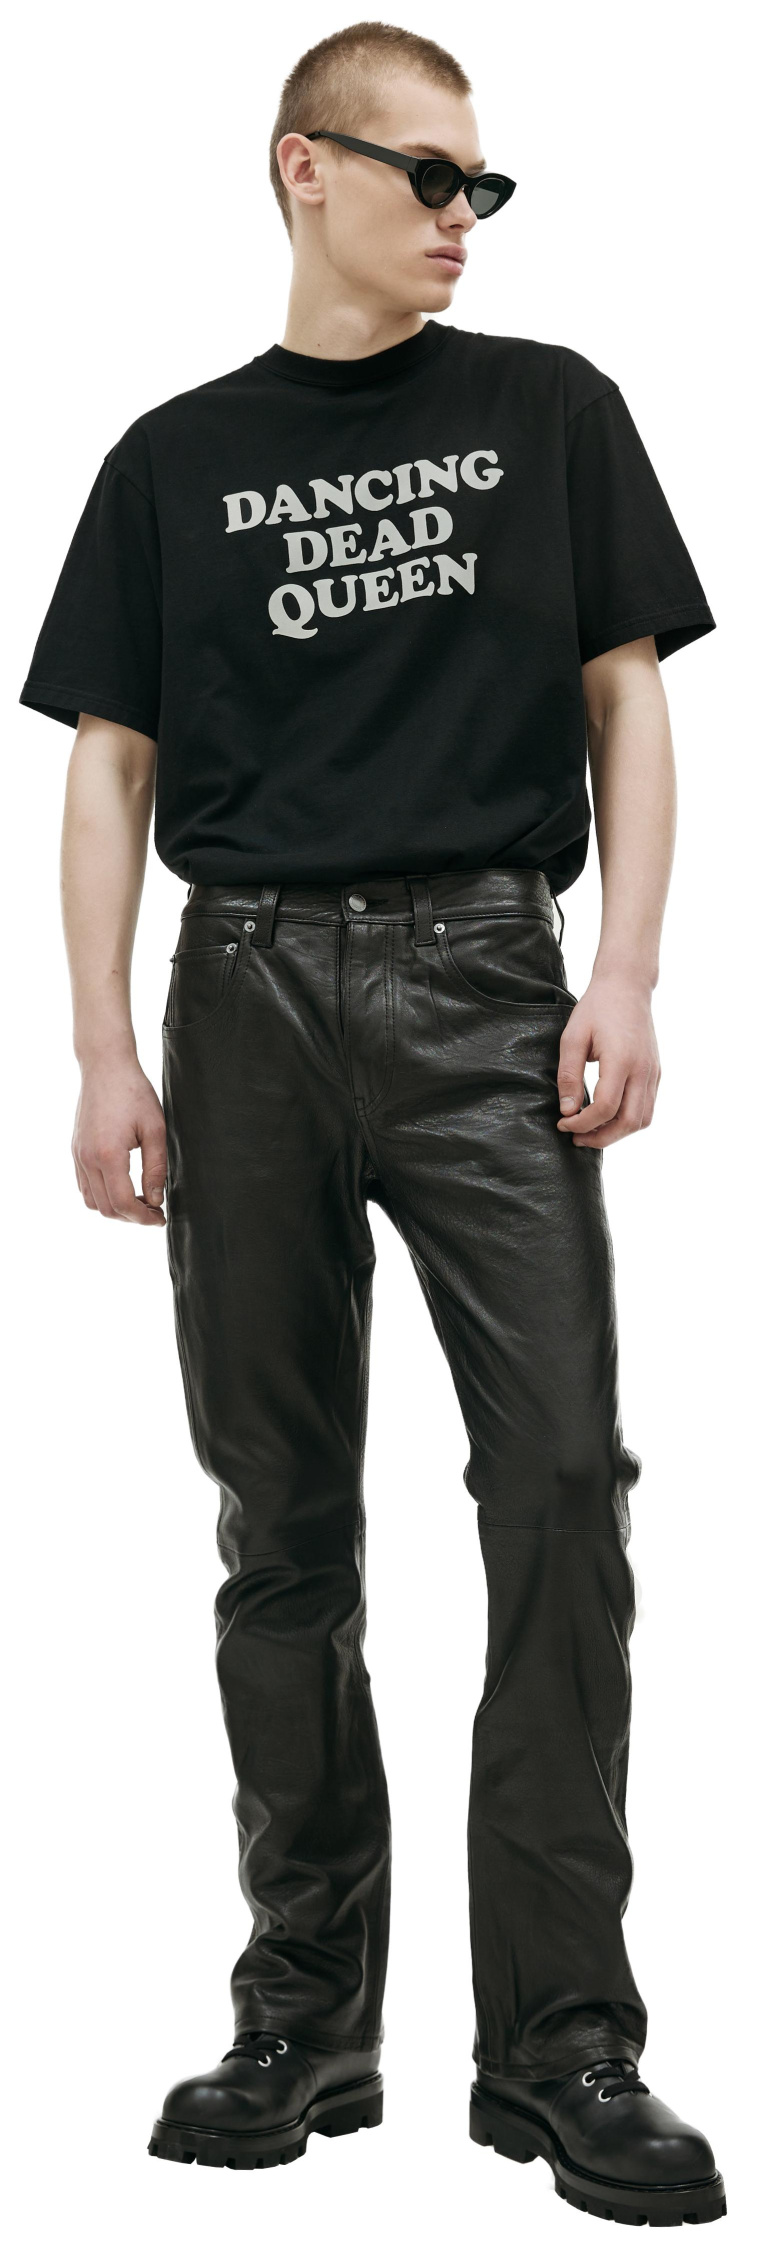 Enfants Riches Deprimes Black leather trousers